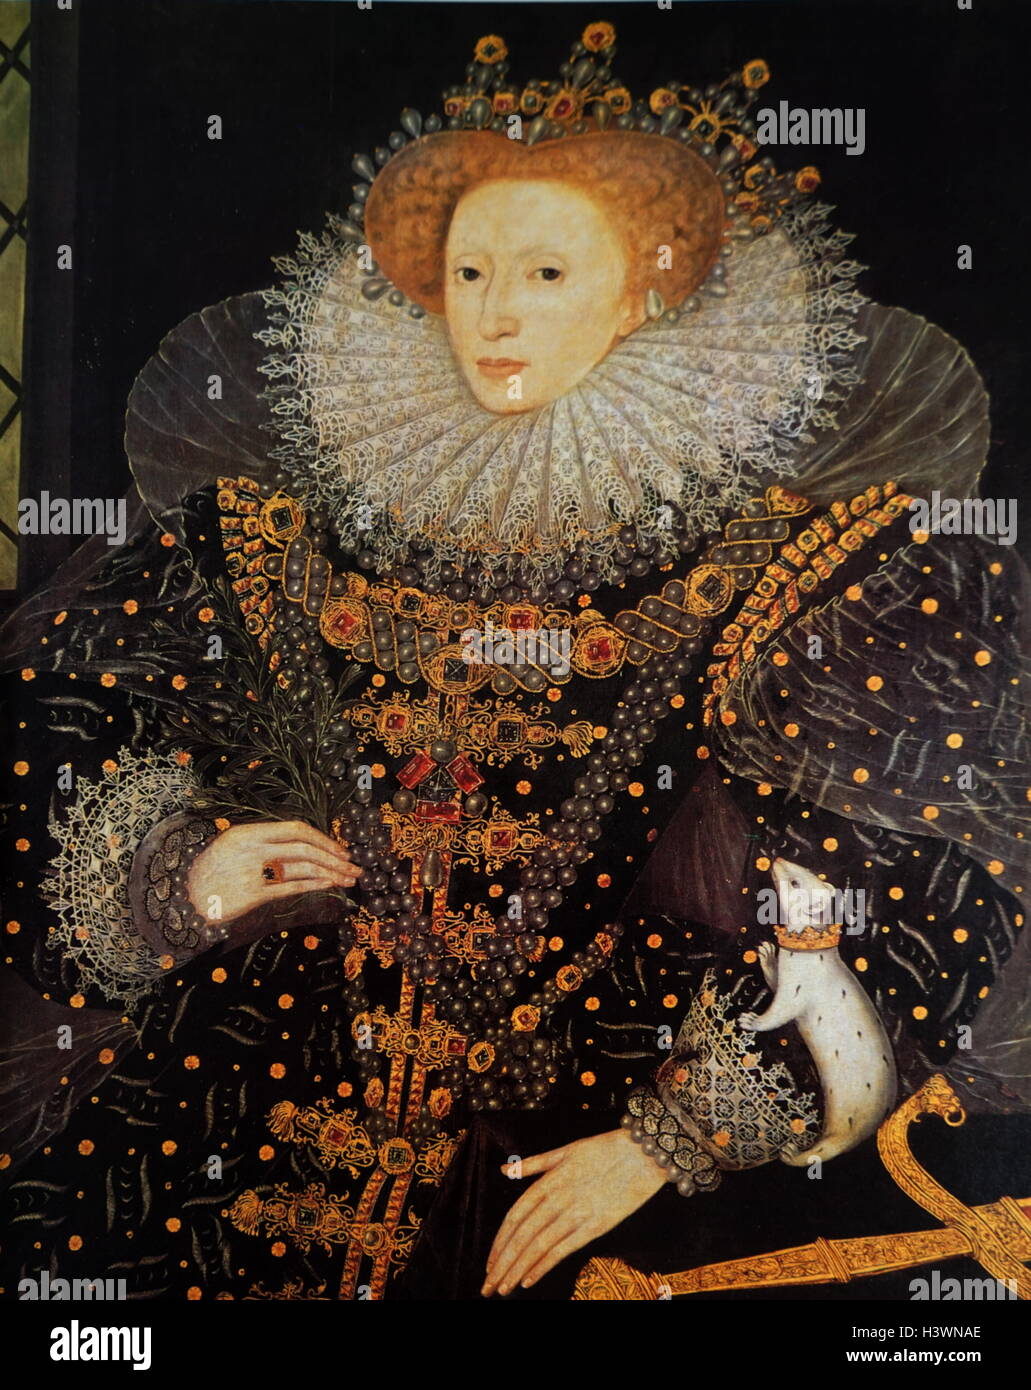 Porträt von Königin Elisabeth i. von England (1533-1603) Königin von England. Datiert aus dem 16. Jahrhundert Stockfoto